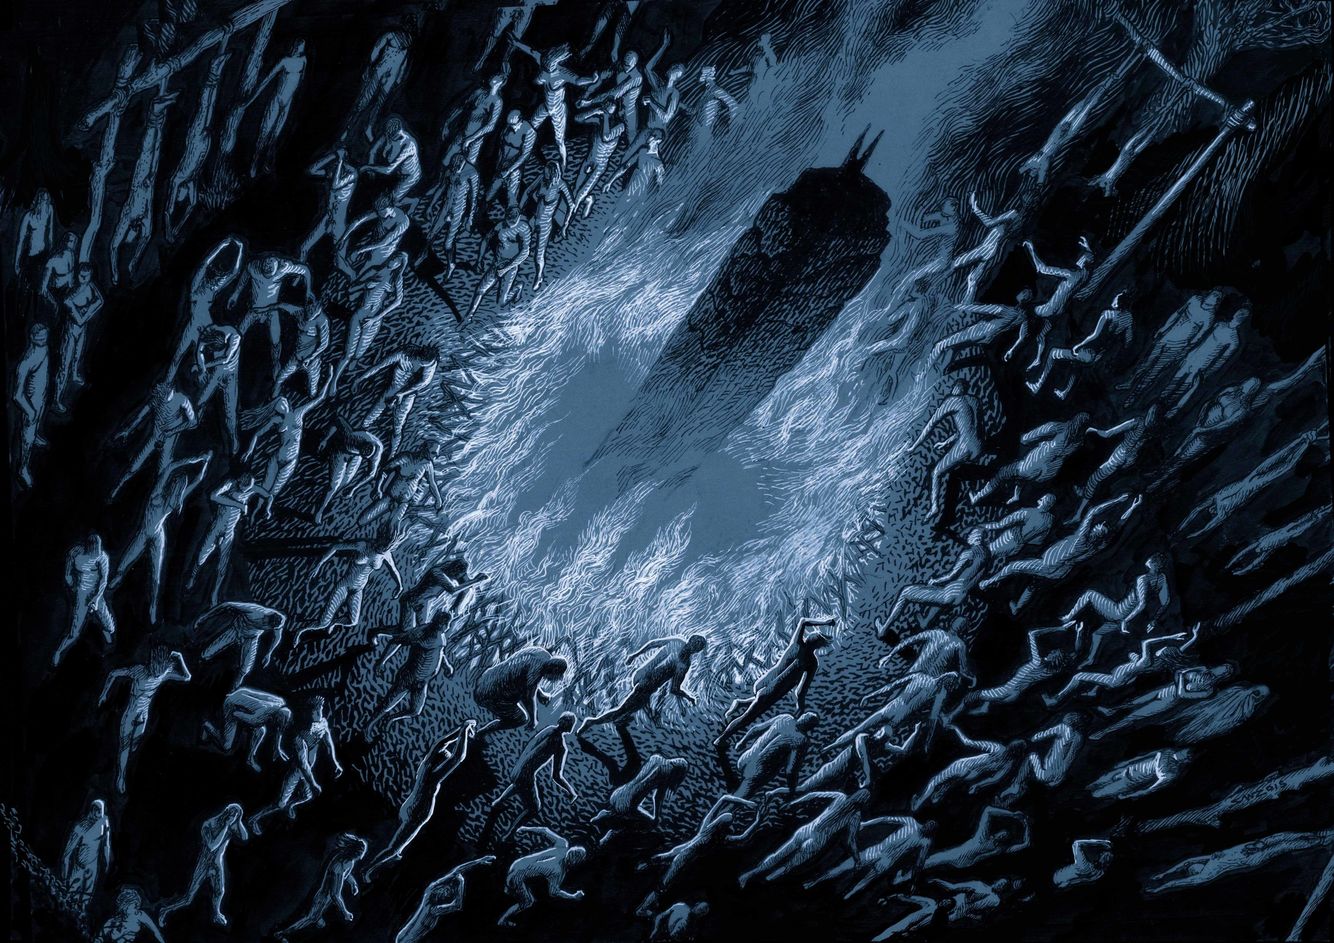 Imagem retangular, em tons frios de azul e preto, representando um grupo de pessoas nuas movendo-se ao redor de uma fogueira que por sua vez encontra-se ao redor de um pilar.